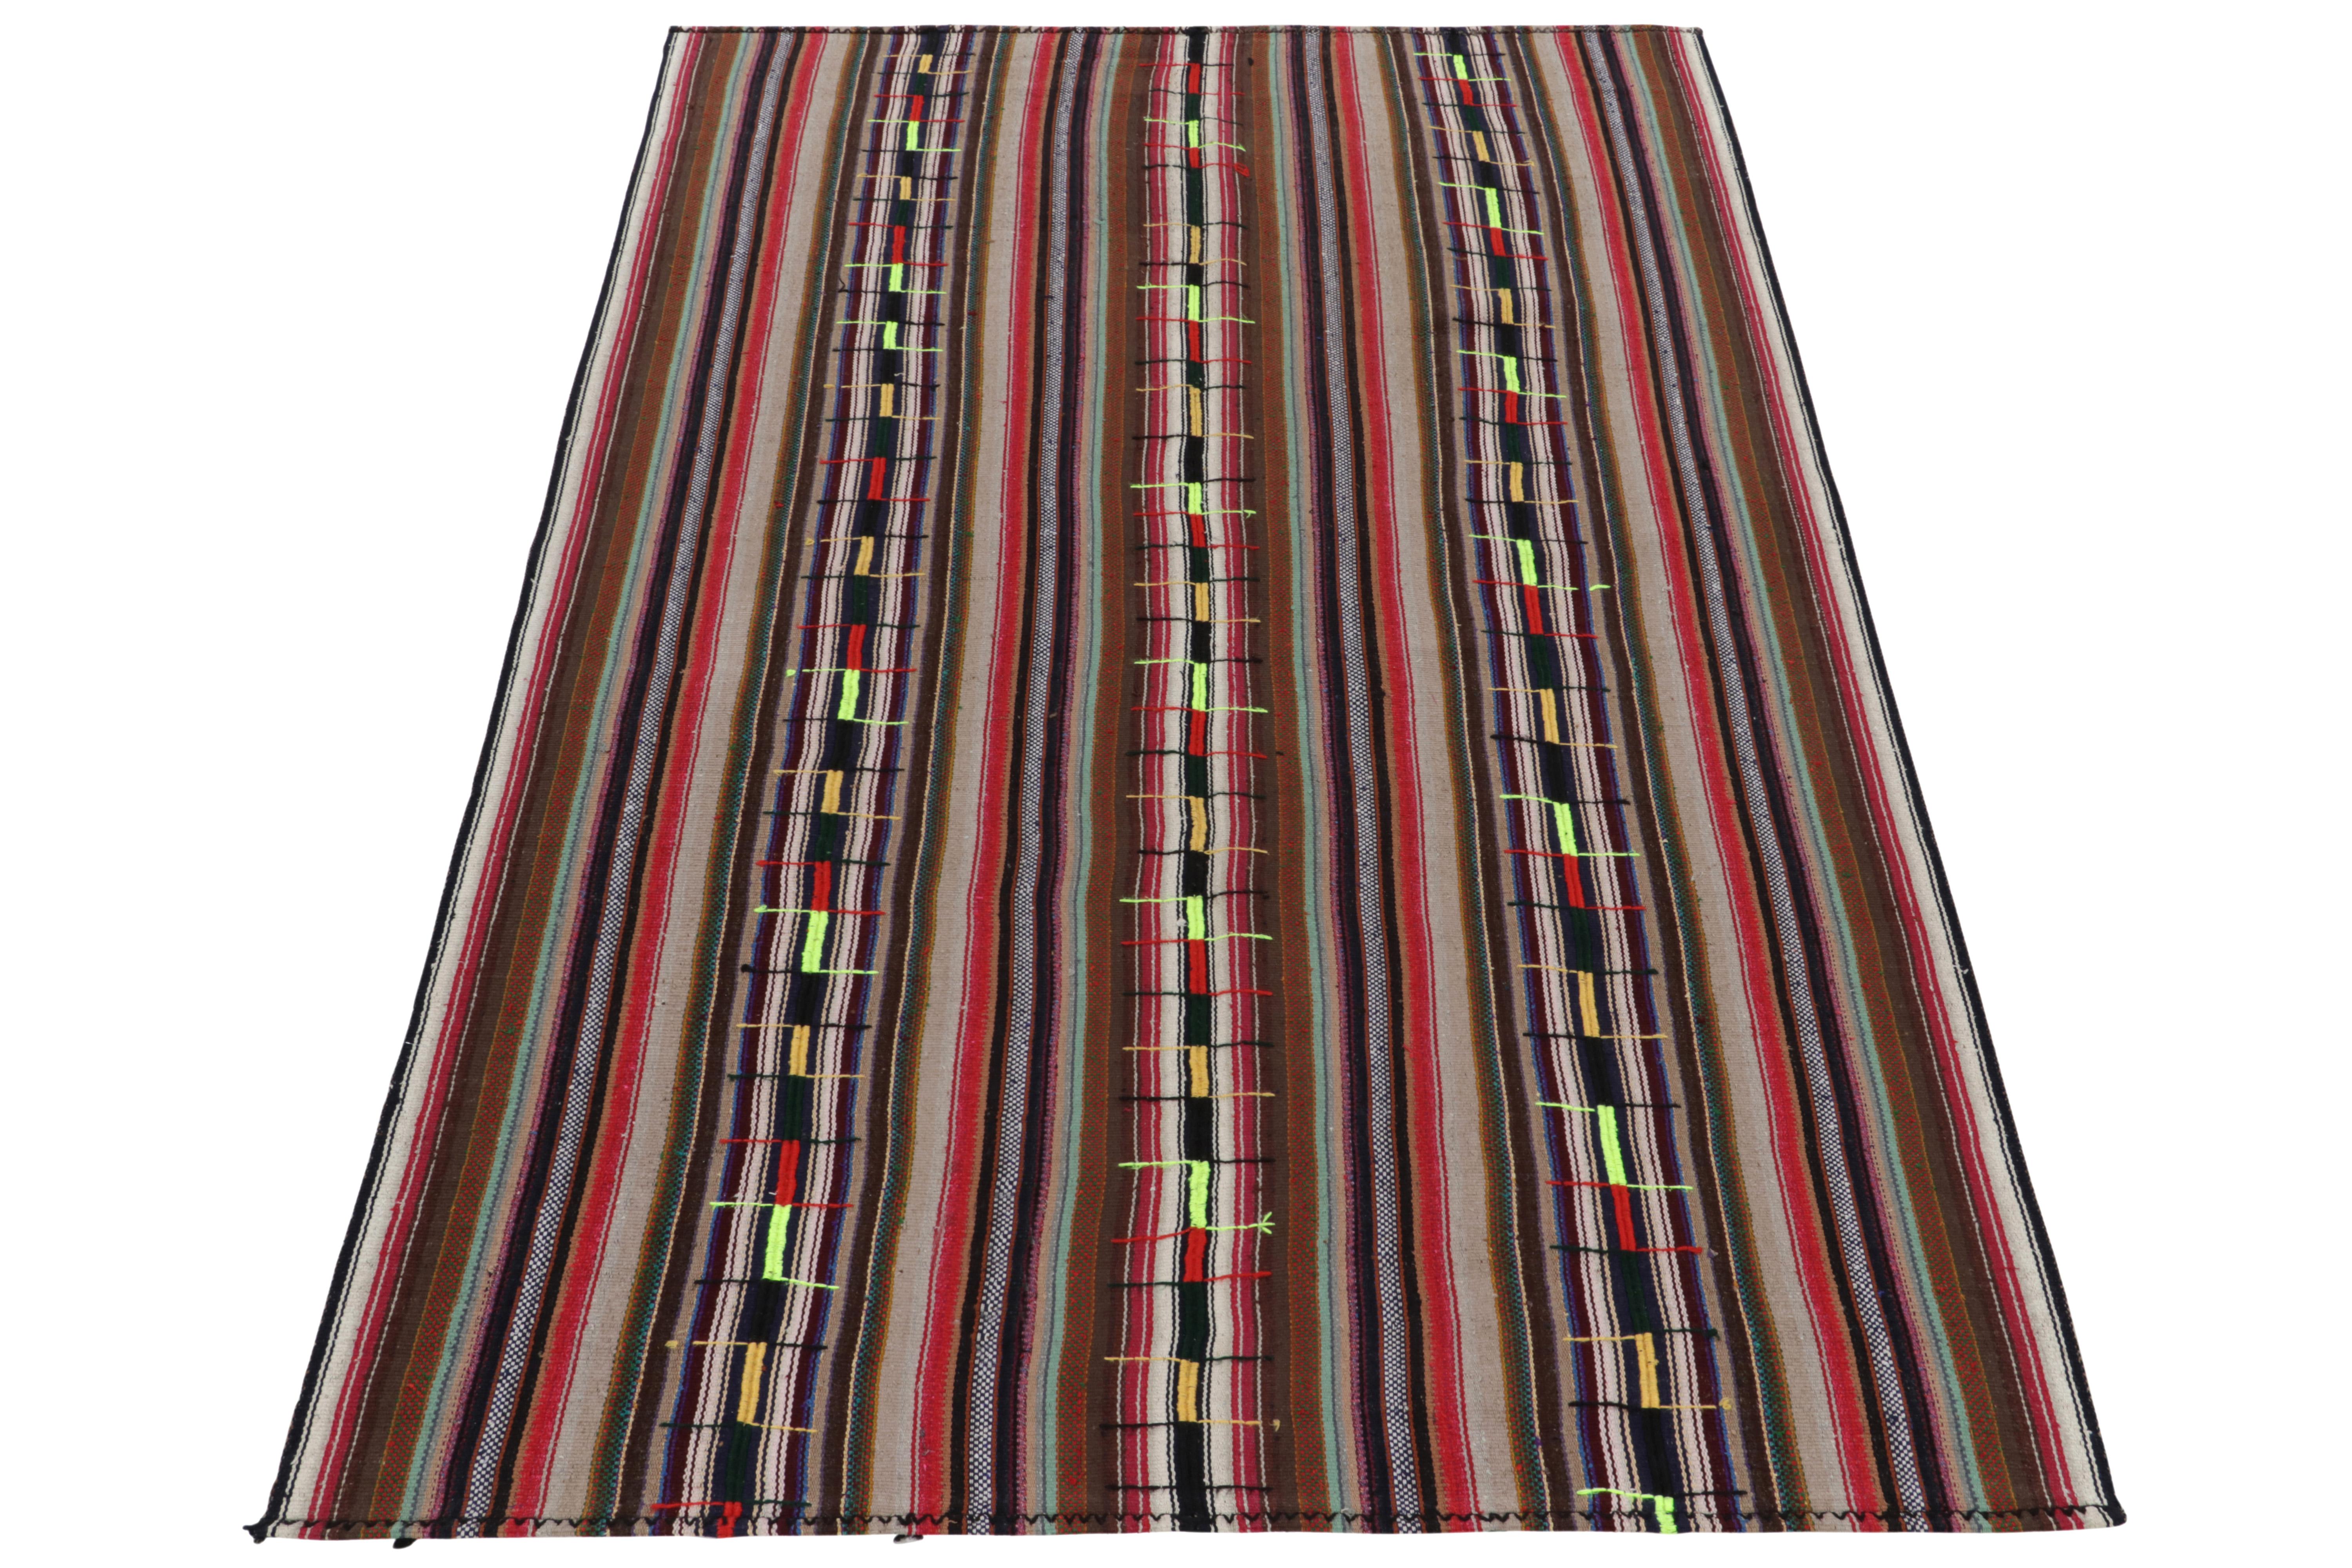 Eine seltene Art von Chaput-Kelim-Teppich aus der Türkei (ca. 1950-1960), der jetzt in unser Antiquitäten- und Vintage-Sortiment aufgenommen wurde. Das leichte und erfrischende Stück, das sich durch feine Details in den Farben der polychromen